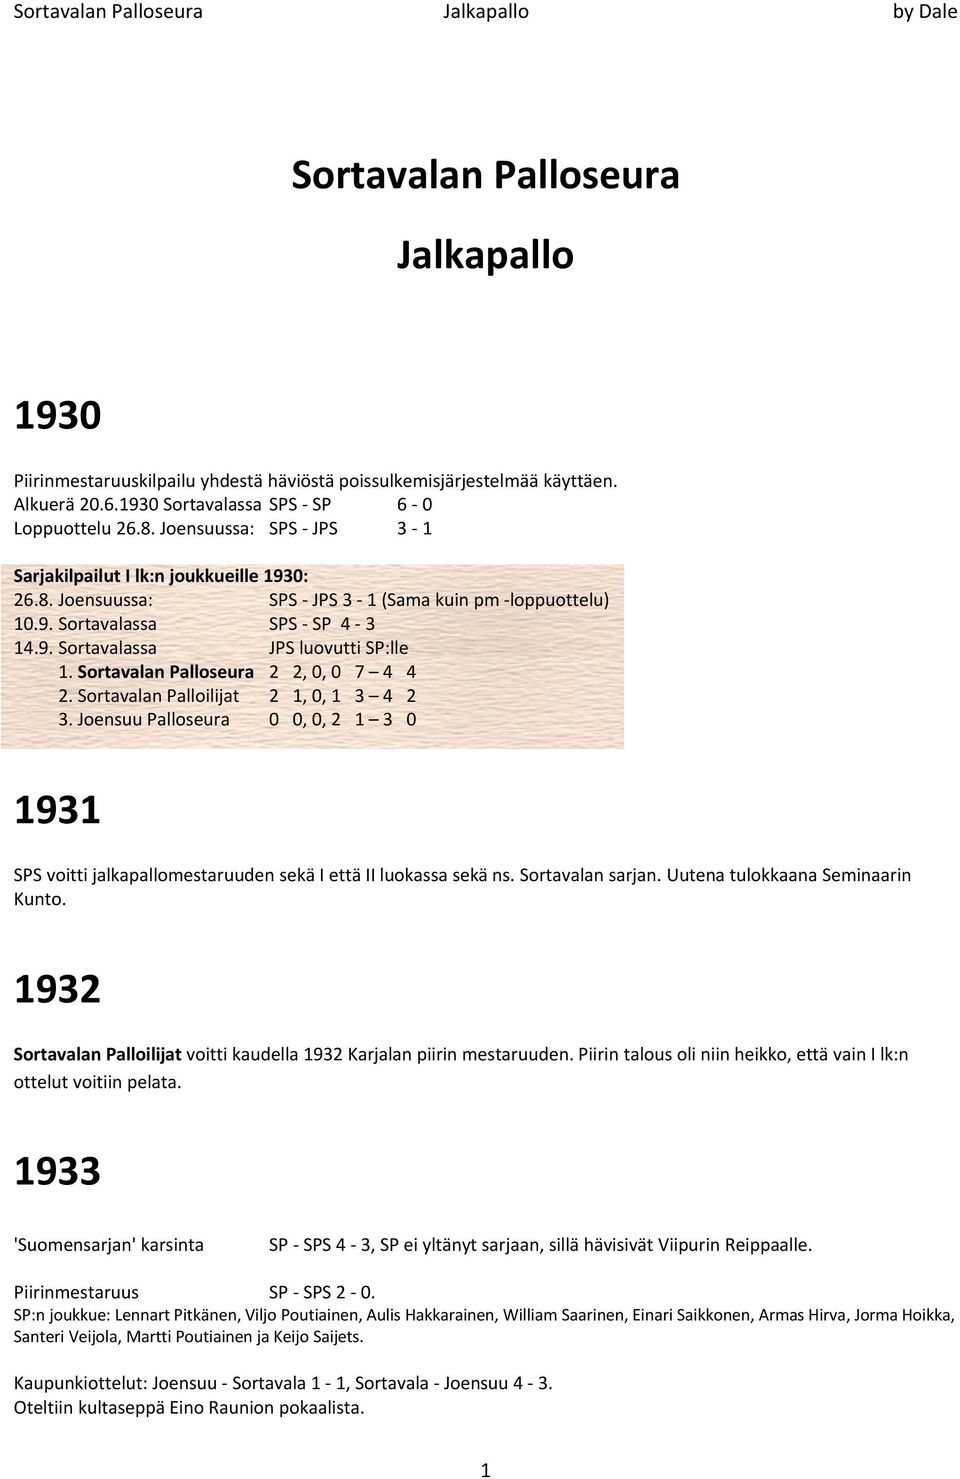 Sortavalan Palloseura 2 2, 0, 0 7 4 4 2. Sortavalan Palloilijat 2 1, 0, 1 3 4 2 3. Joensuu Palloseura 0 0, 0, 2 1 3 0 1931 SPS voitti jalkapallomestaruuden sekä I että II luokassa sekä ns.